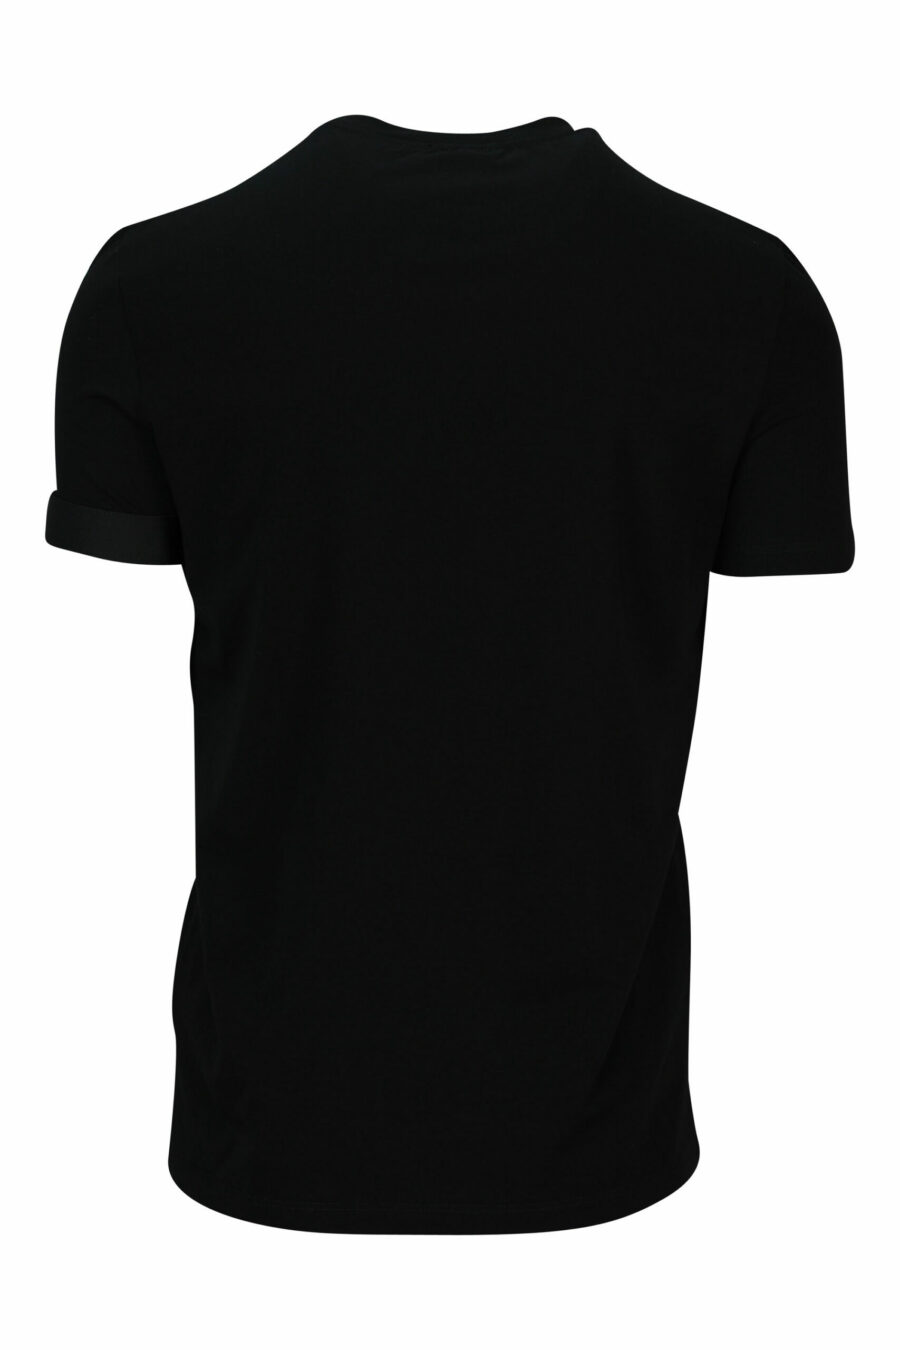 Camiseta negra con logo pequeño - 8032674767431 2 scaled